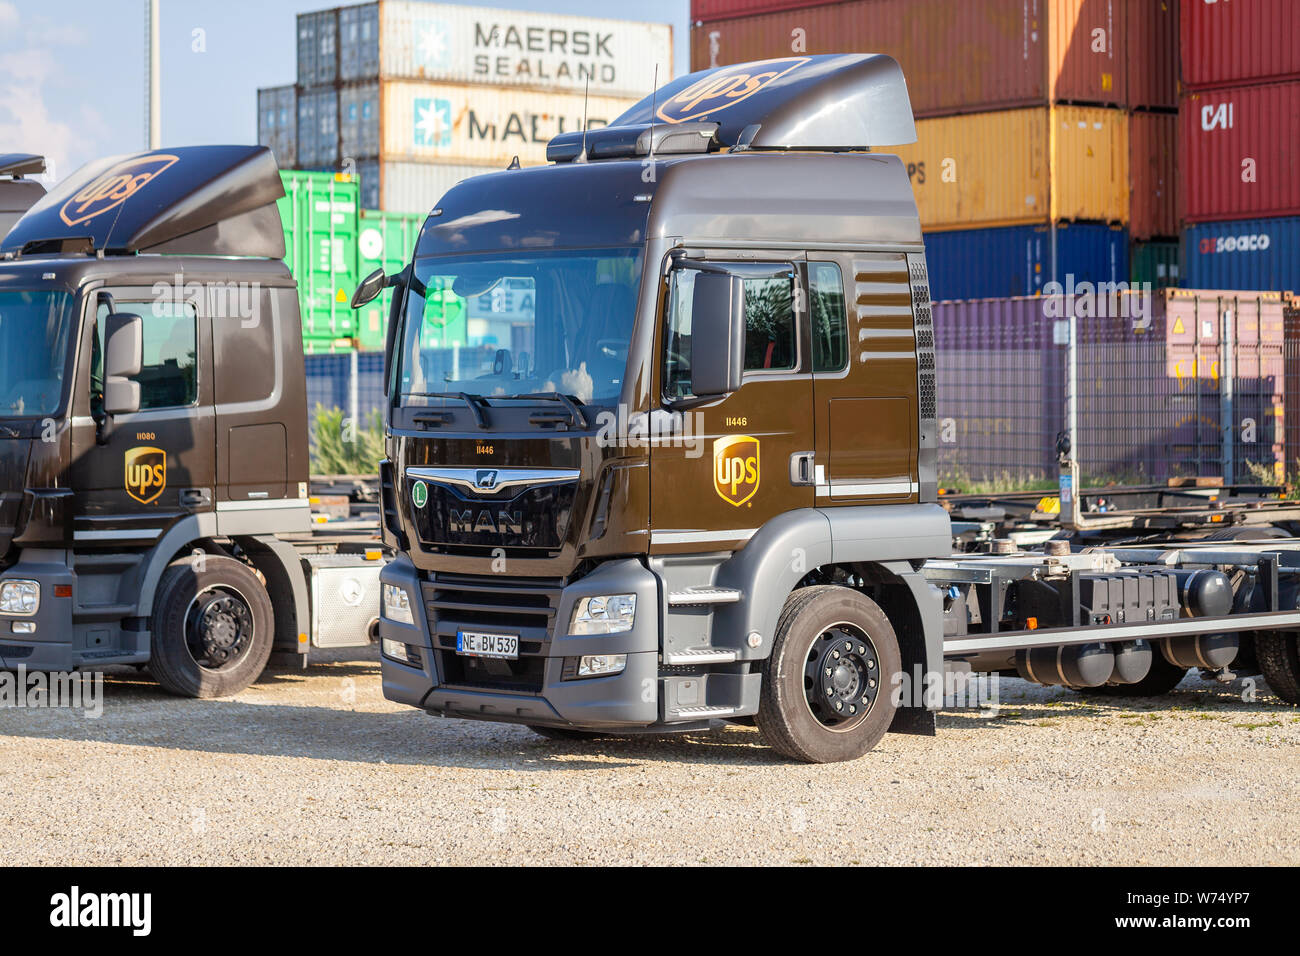 Nürnberg/Deutschland - August 4, 2019: Verschiedene Lkw aus dem amerikanischen multinationalen Paketzustellung, United Parcel Service (UPS), steht in der Nähe von Cont Stockfoto